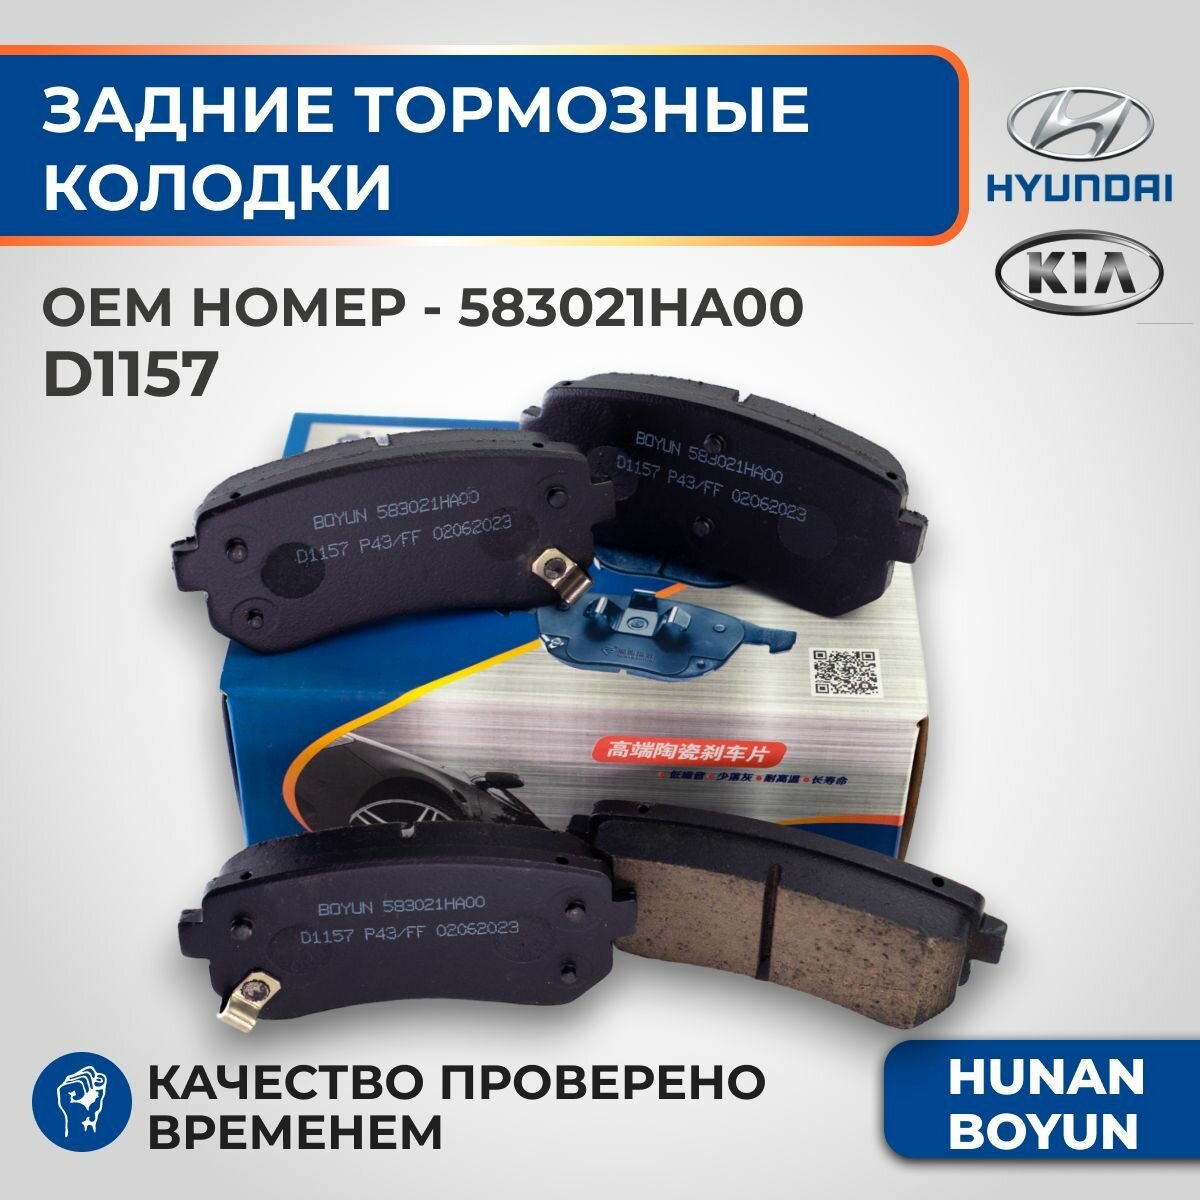 Задние тормозные колодки для Hyundai Sonata, Creta, Tucson, Kia Rio, Cerato, Sportage - 583021HA00